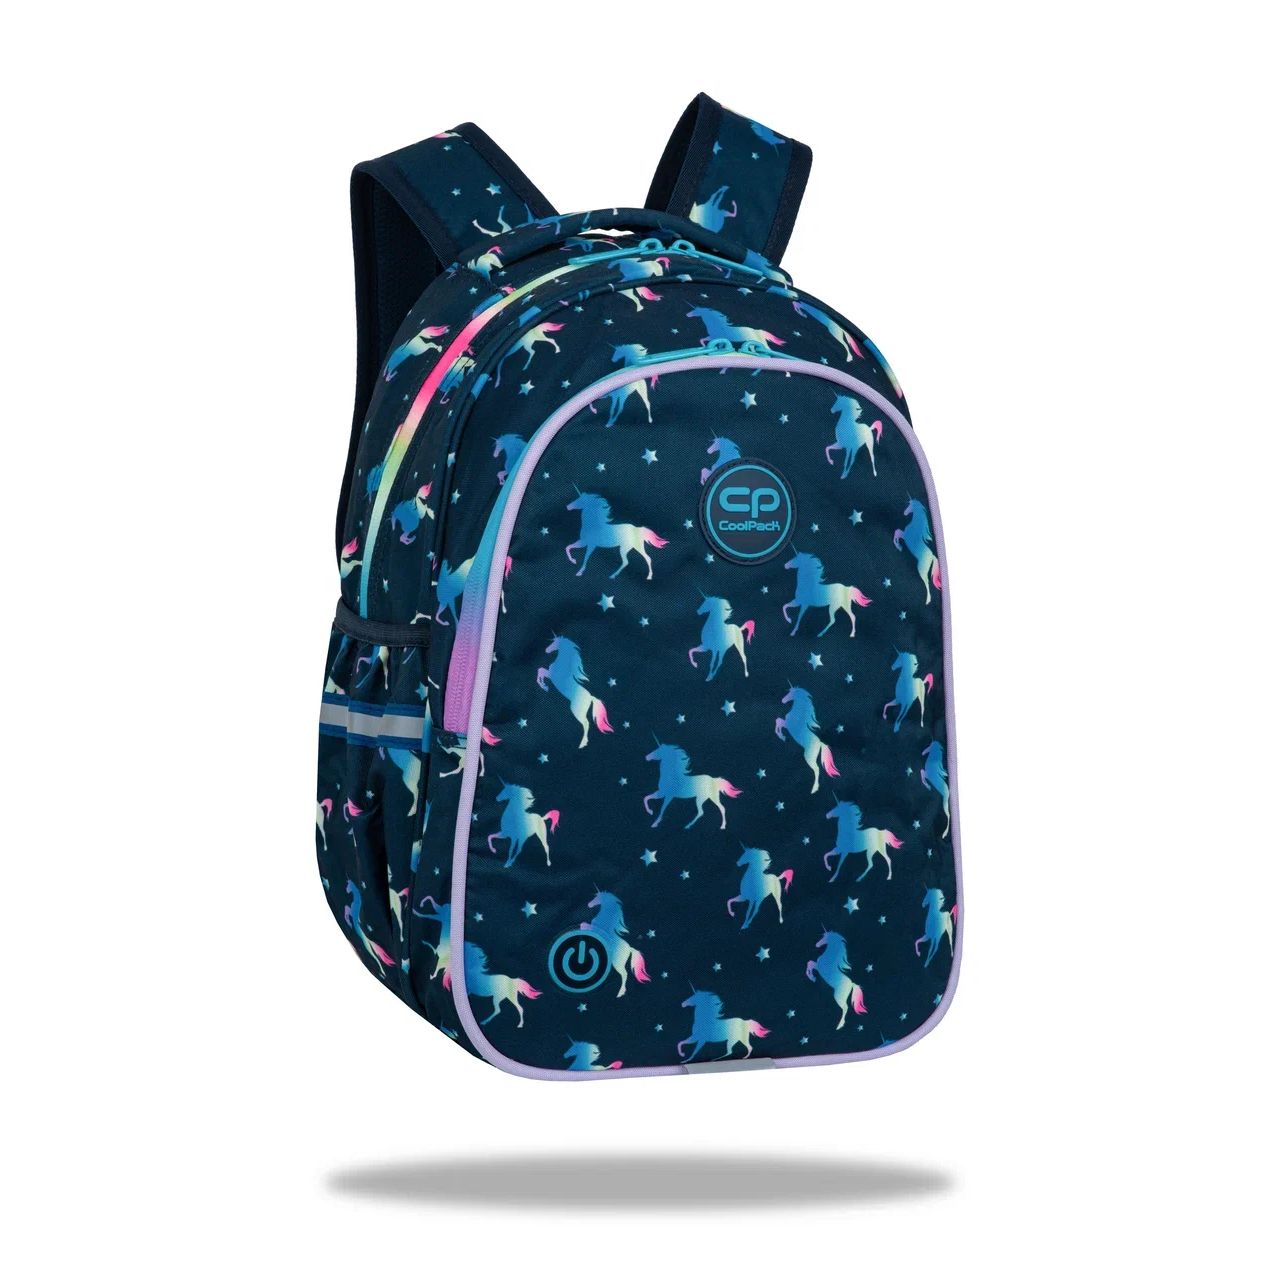 Рюкзак школьный Сool Pack LED, 39х28х17 см, 2 отделения, светодиодная подсветка рюкзак школьный сool pack base sugar babes 44х29х16 см 27 л 2 отделения